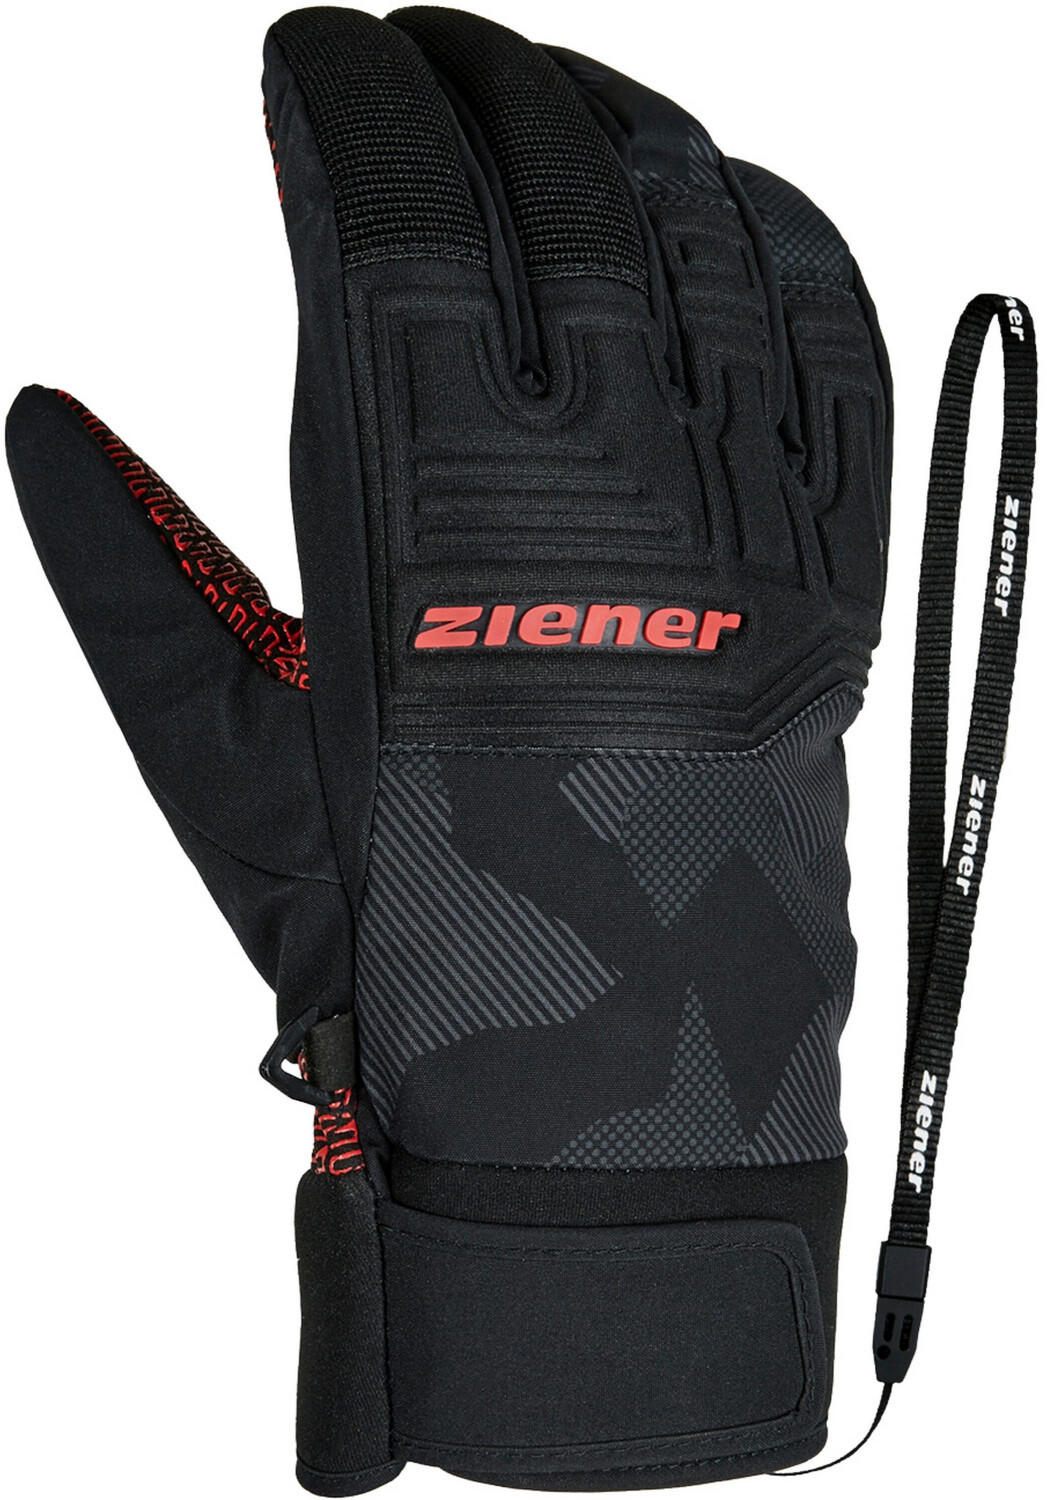 Ziener Garim AS Glove Ski Alpine gray ink camo Erfahrungen 5/5 Sternen